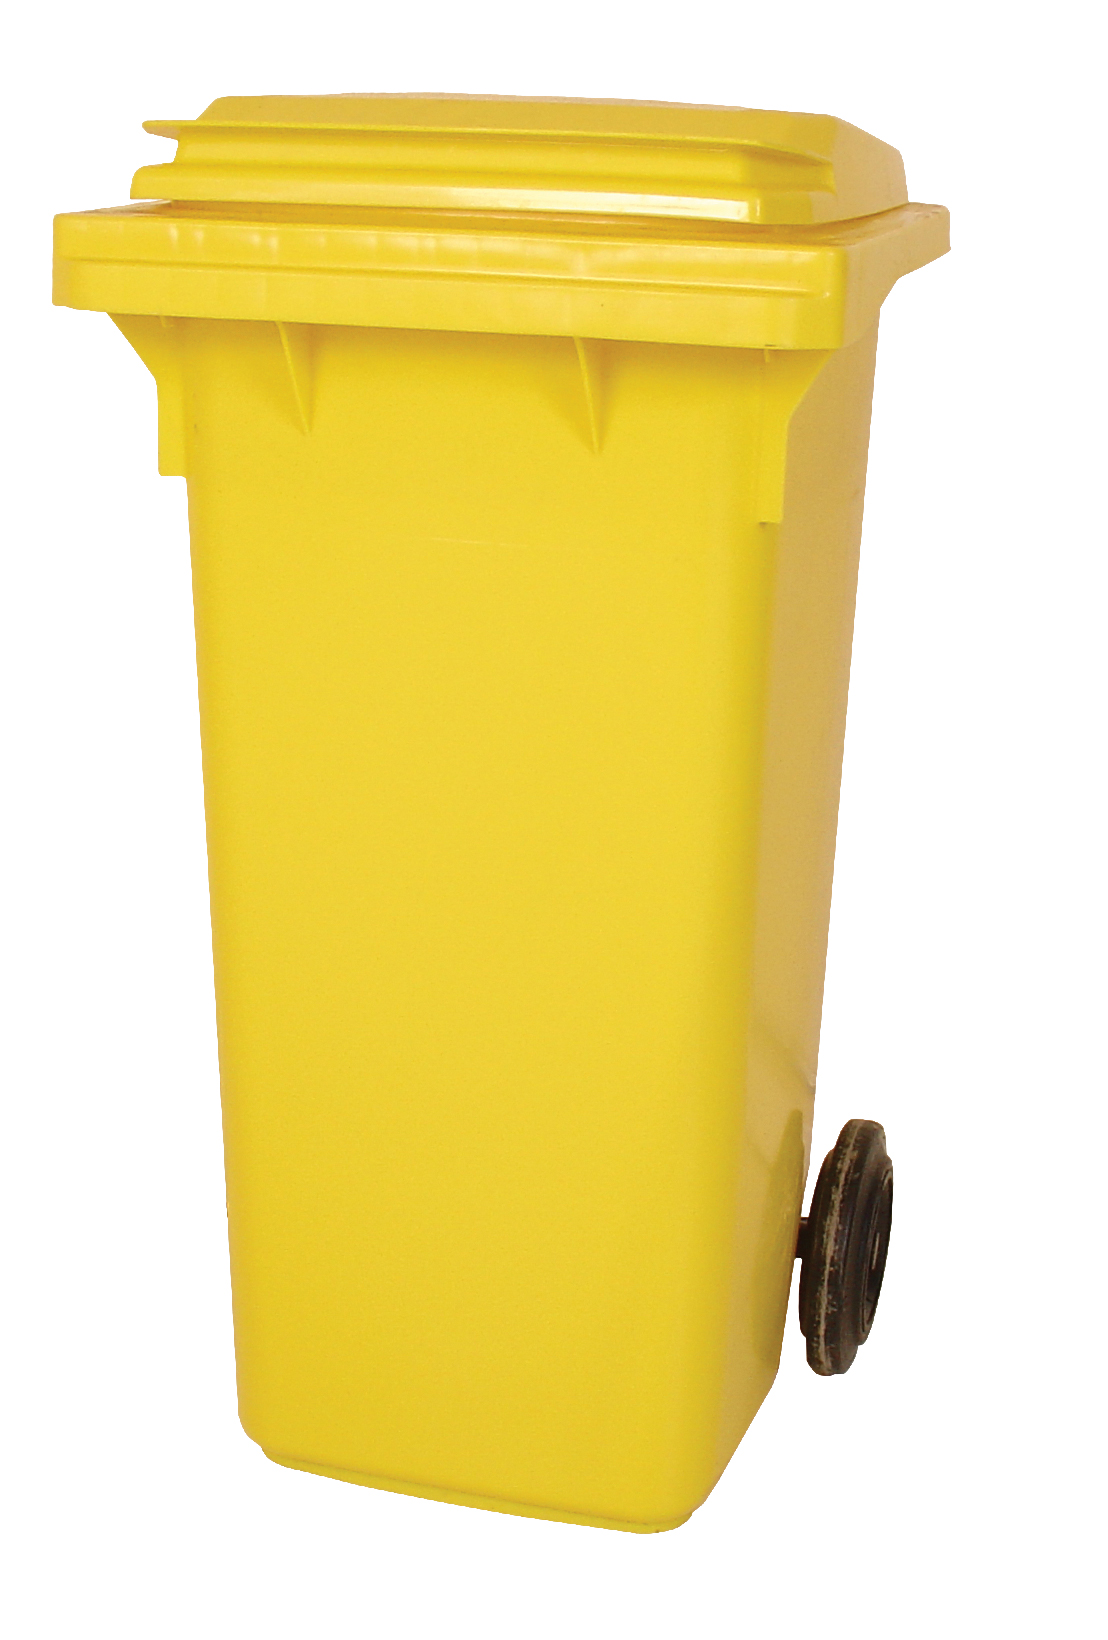 Empty 120 litre Wheelie Bin: Yellow